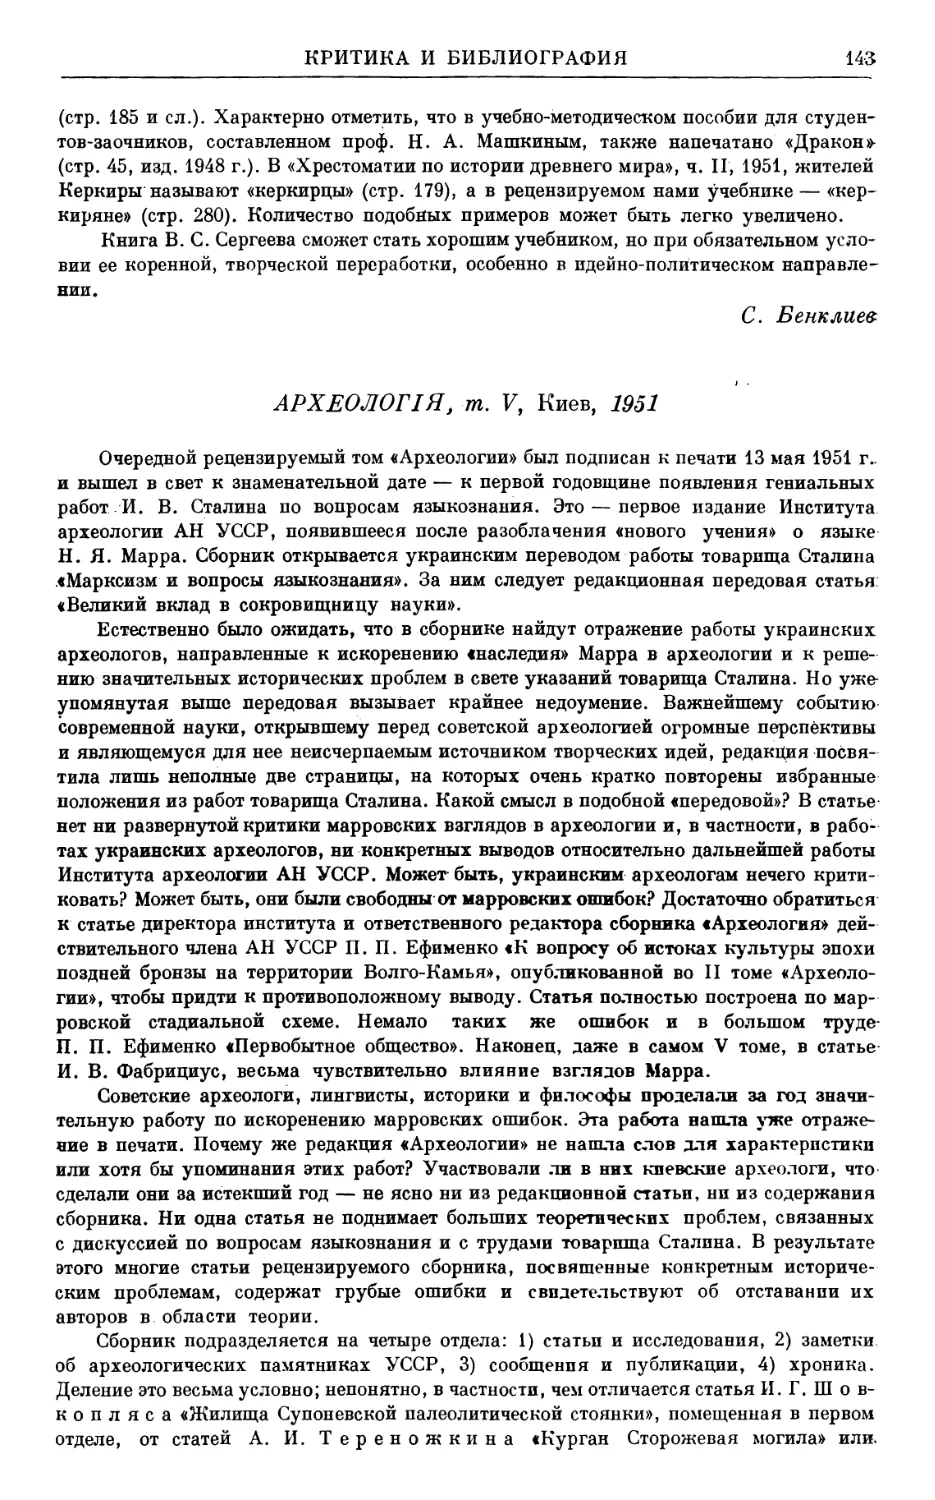 В.В. Кропоткин и Н.Я. Мерперт. — Археология, т. V, Киев, 1951